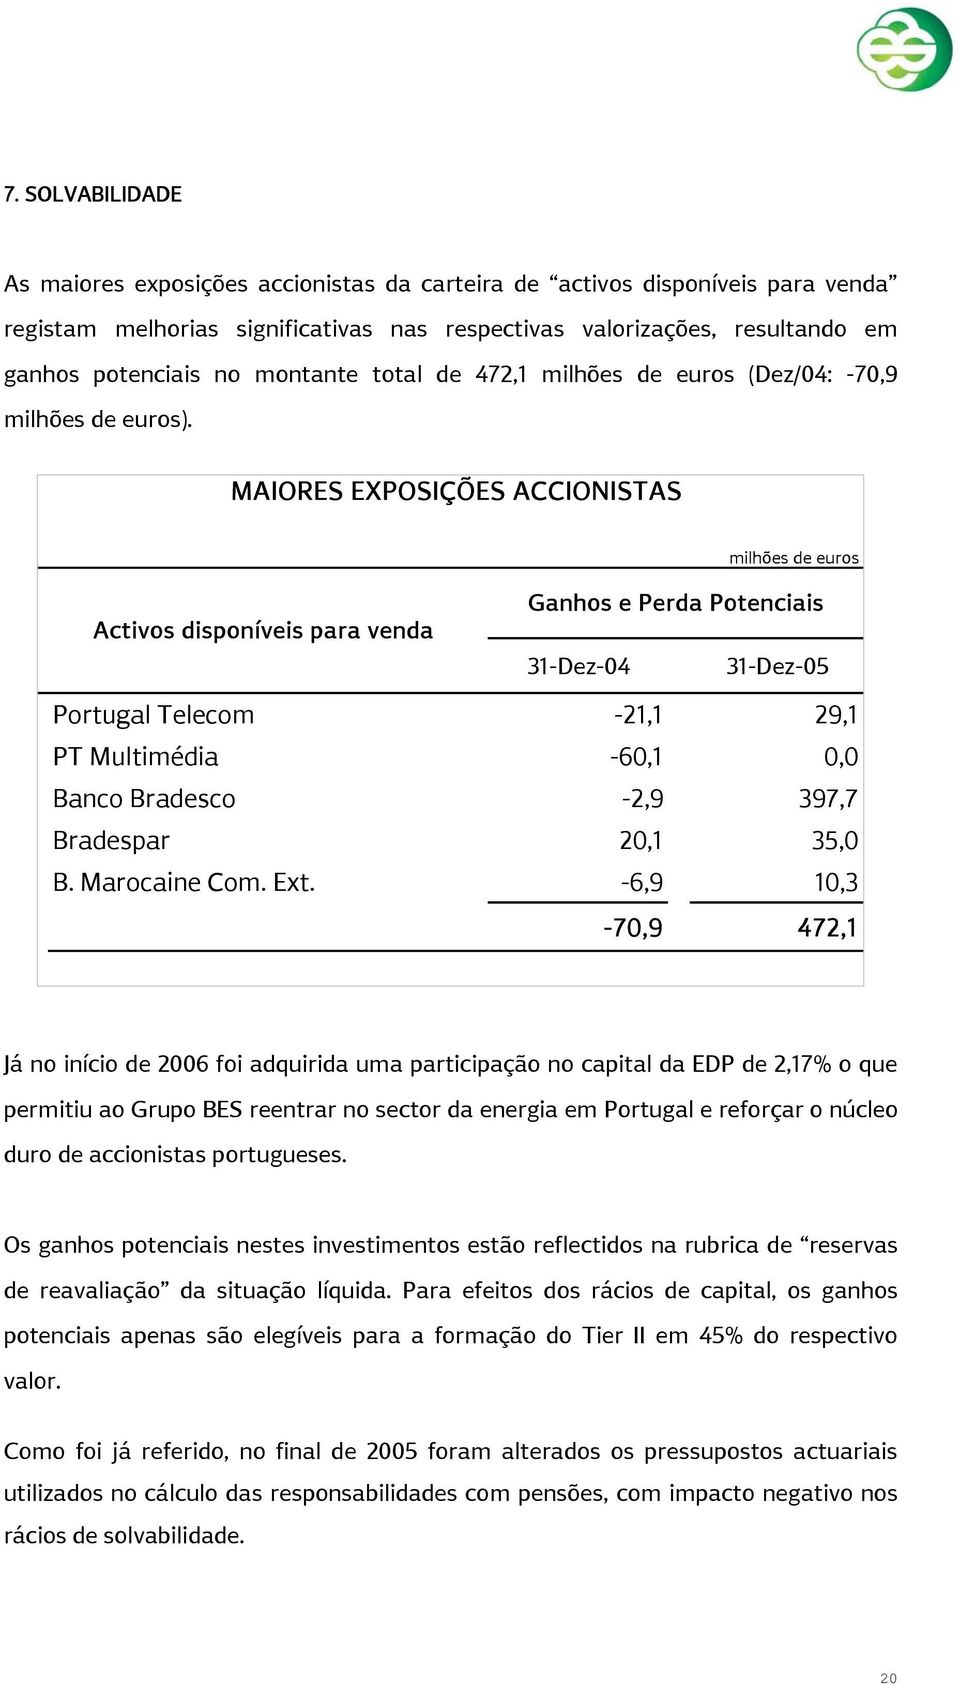 MAIORES EXPOSIÇÕES ACCIONISTAS milhões de euros Activos disponíveis para venda Ganhos e Perda Potenciais 31-Dez-04 31-Dez-05 Portugal Telecom -21,1 29,1 PT Multimédia -60,1 0,0 Banco Bradesco -2,9